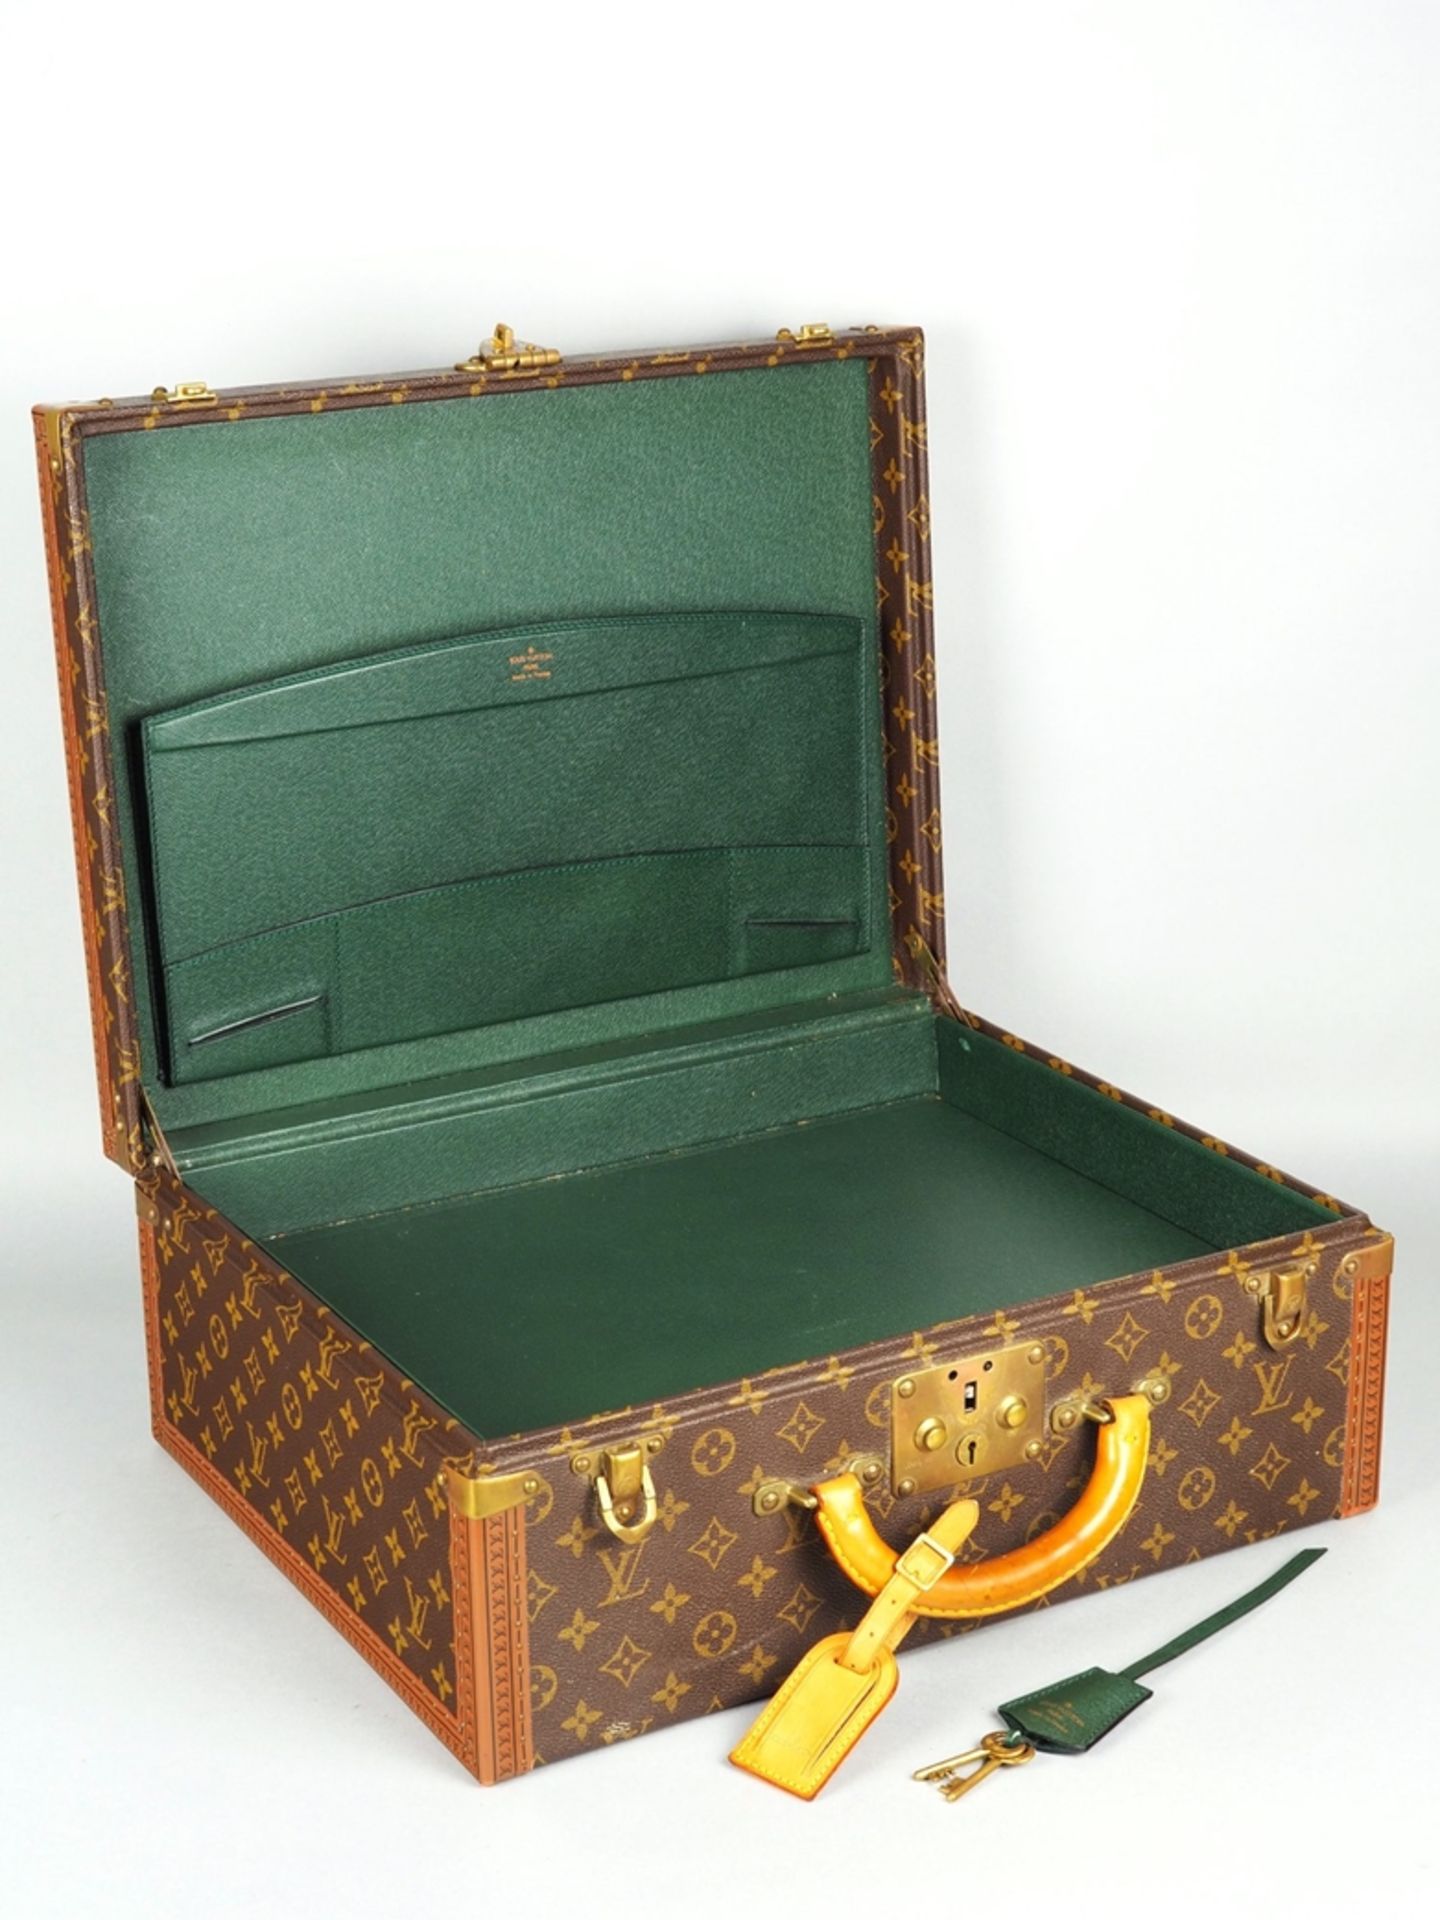 Louis Vuitton Cotteville 45 suitcase, vintage, 1980/90s. - Image 3 of 8